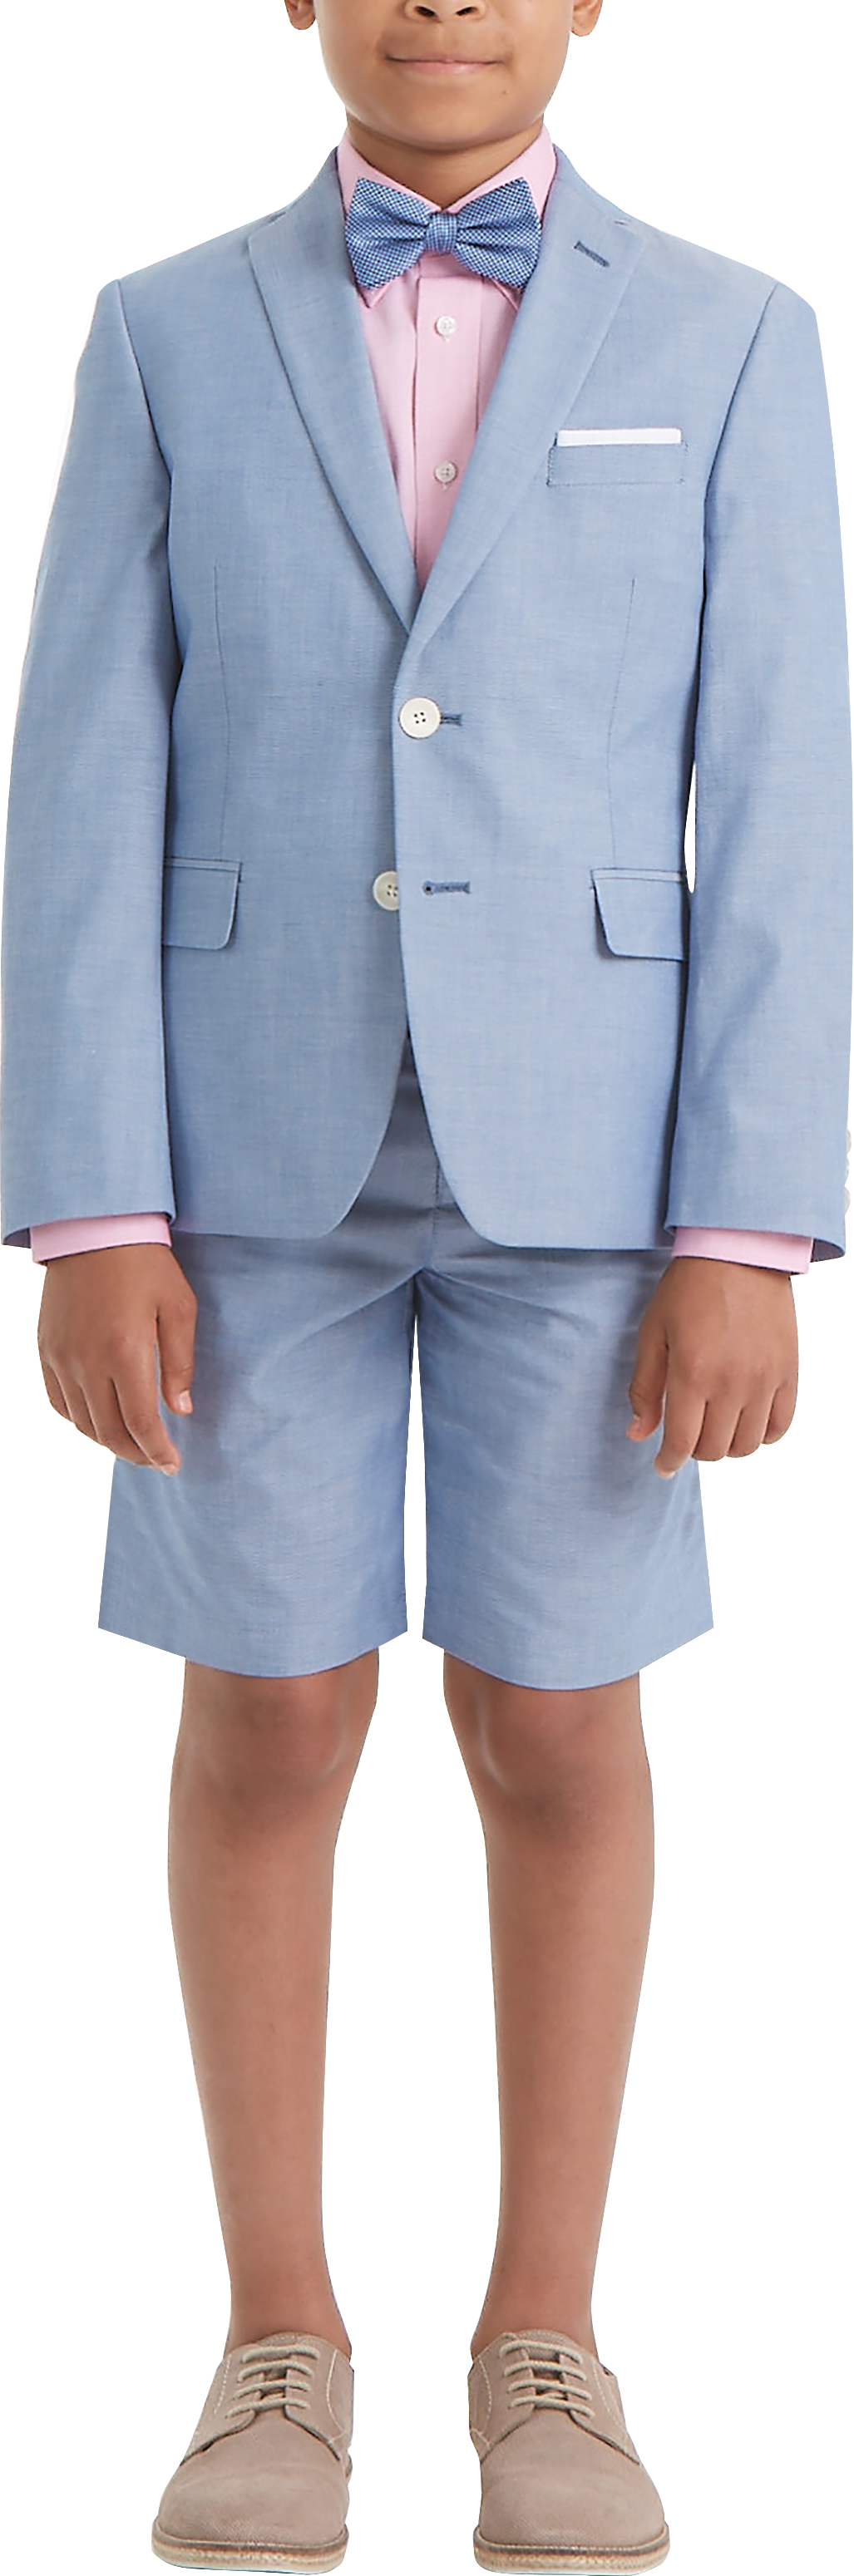 Lauren By Ralph Lauren Boys (Sizes 8-20) Suit Separates Pants